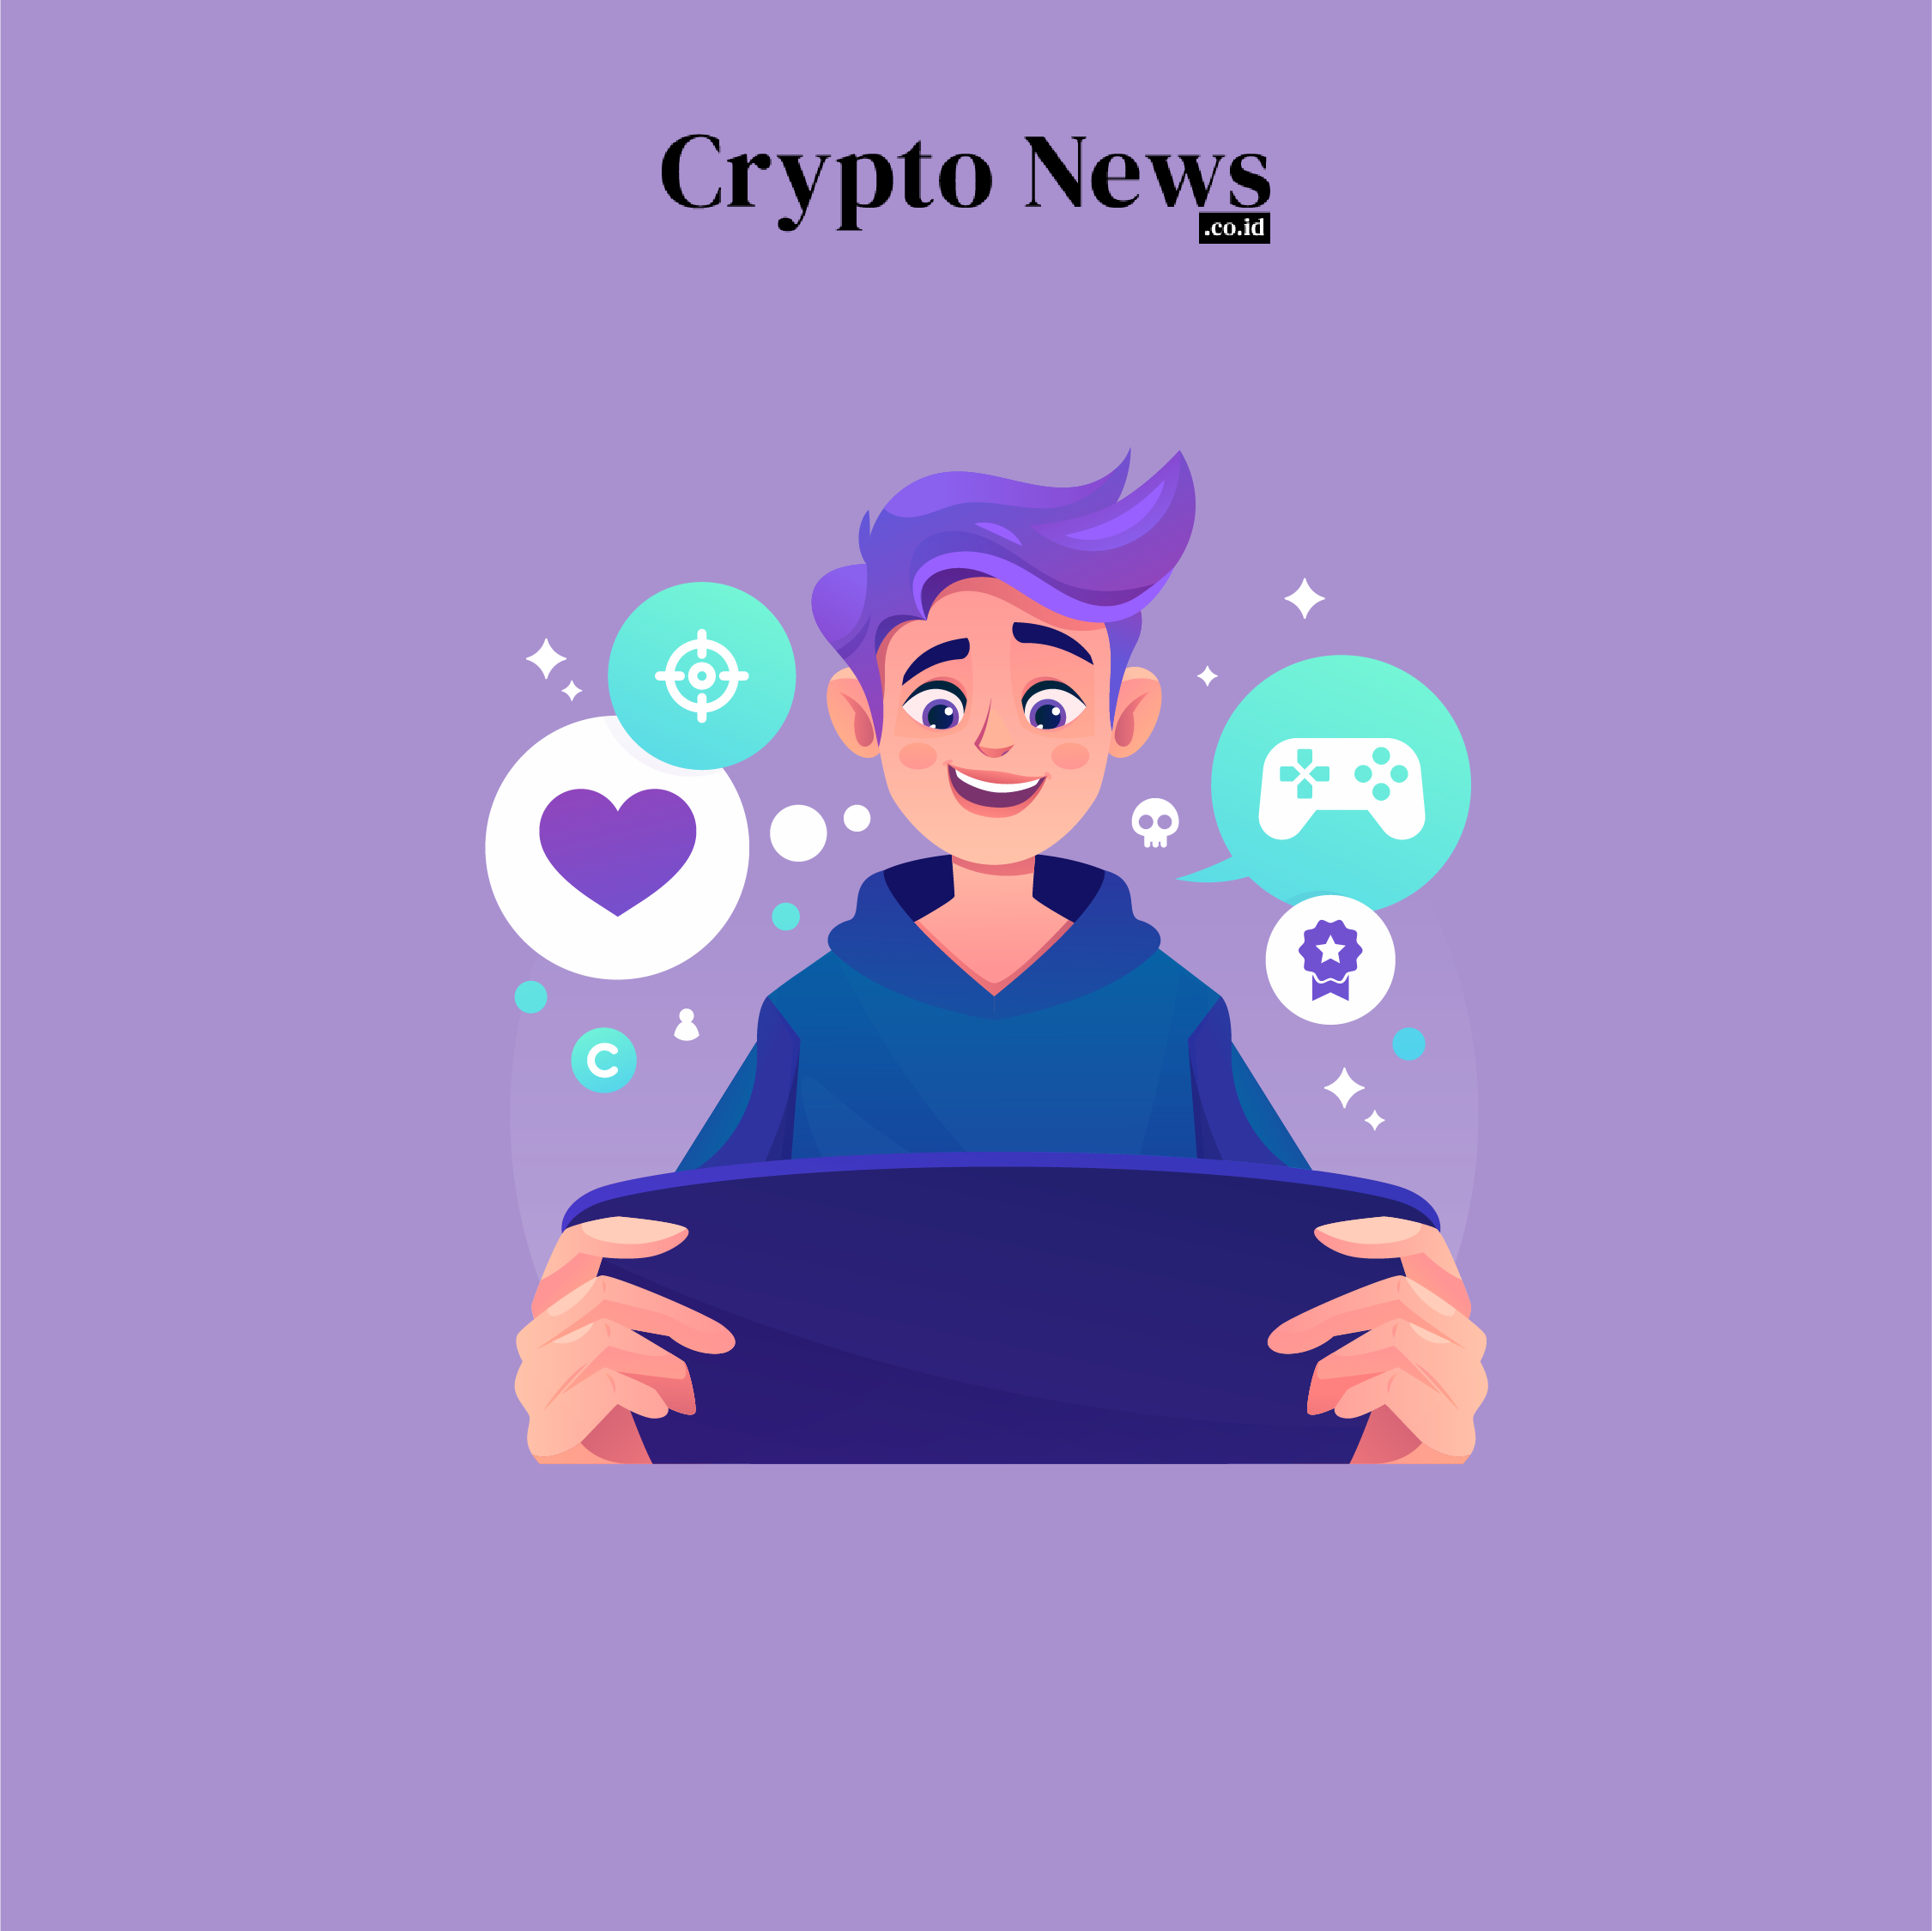 Crypto news indonesia, situs berita cryptocurrency & blockchain - illust - konami memperluas jangkauannya ke nft dan metaverse